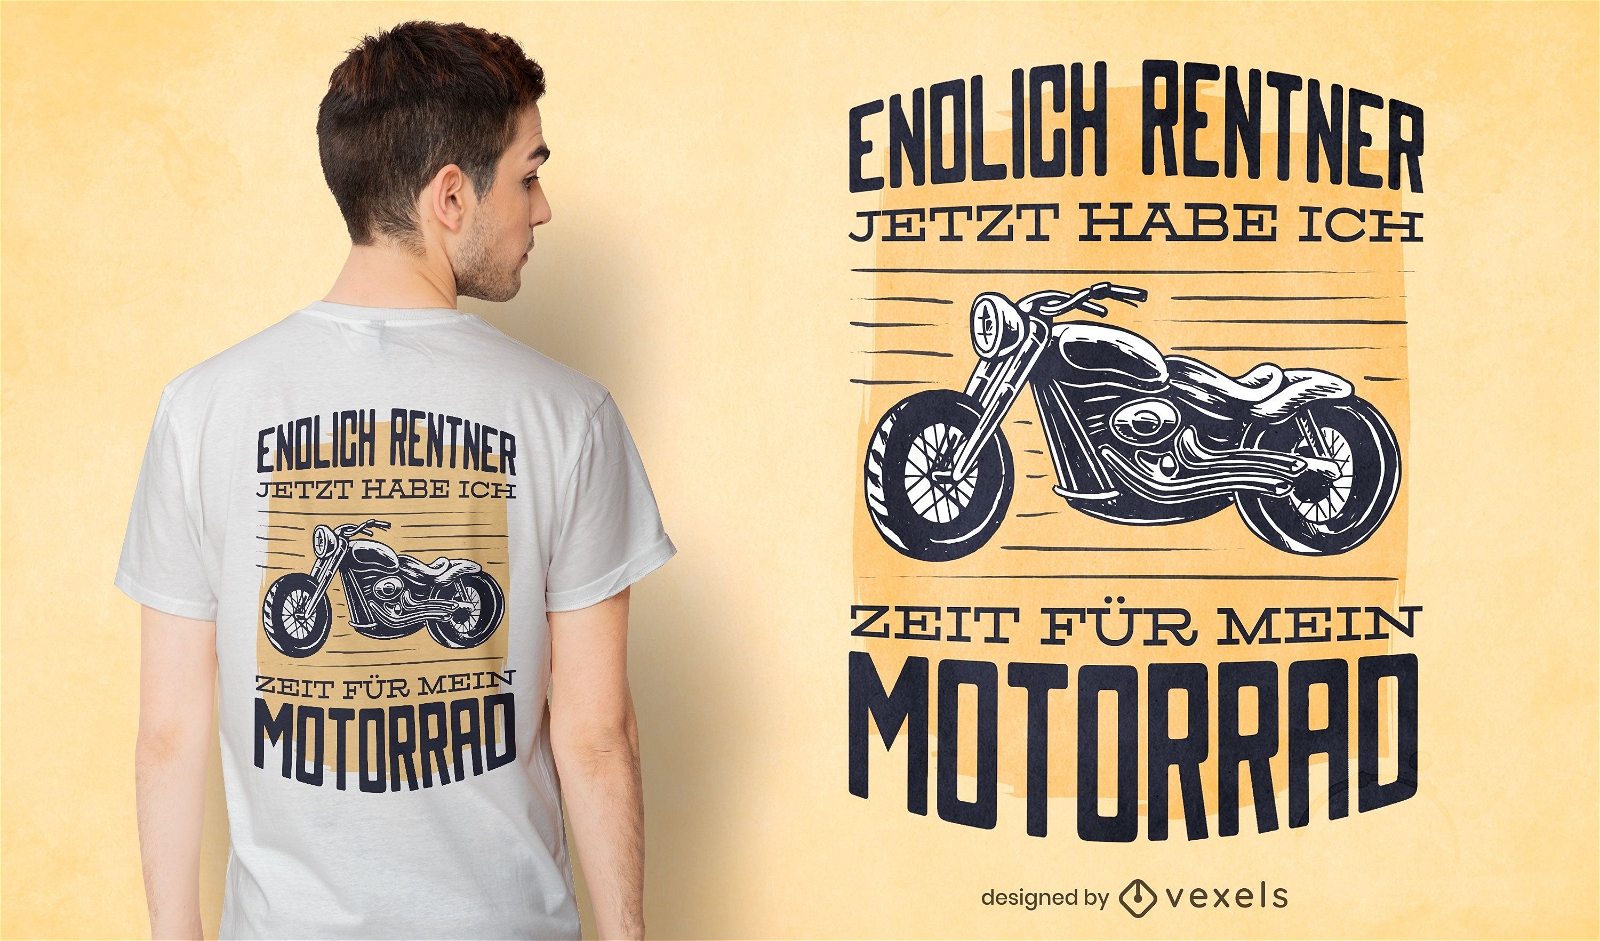 Dise?o de camiseta de motocicleta con cita alemana.